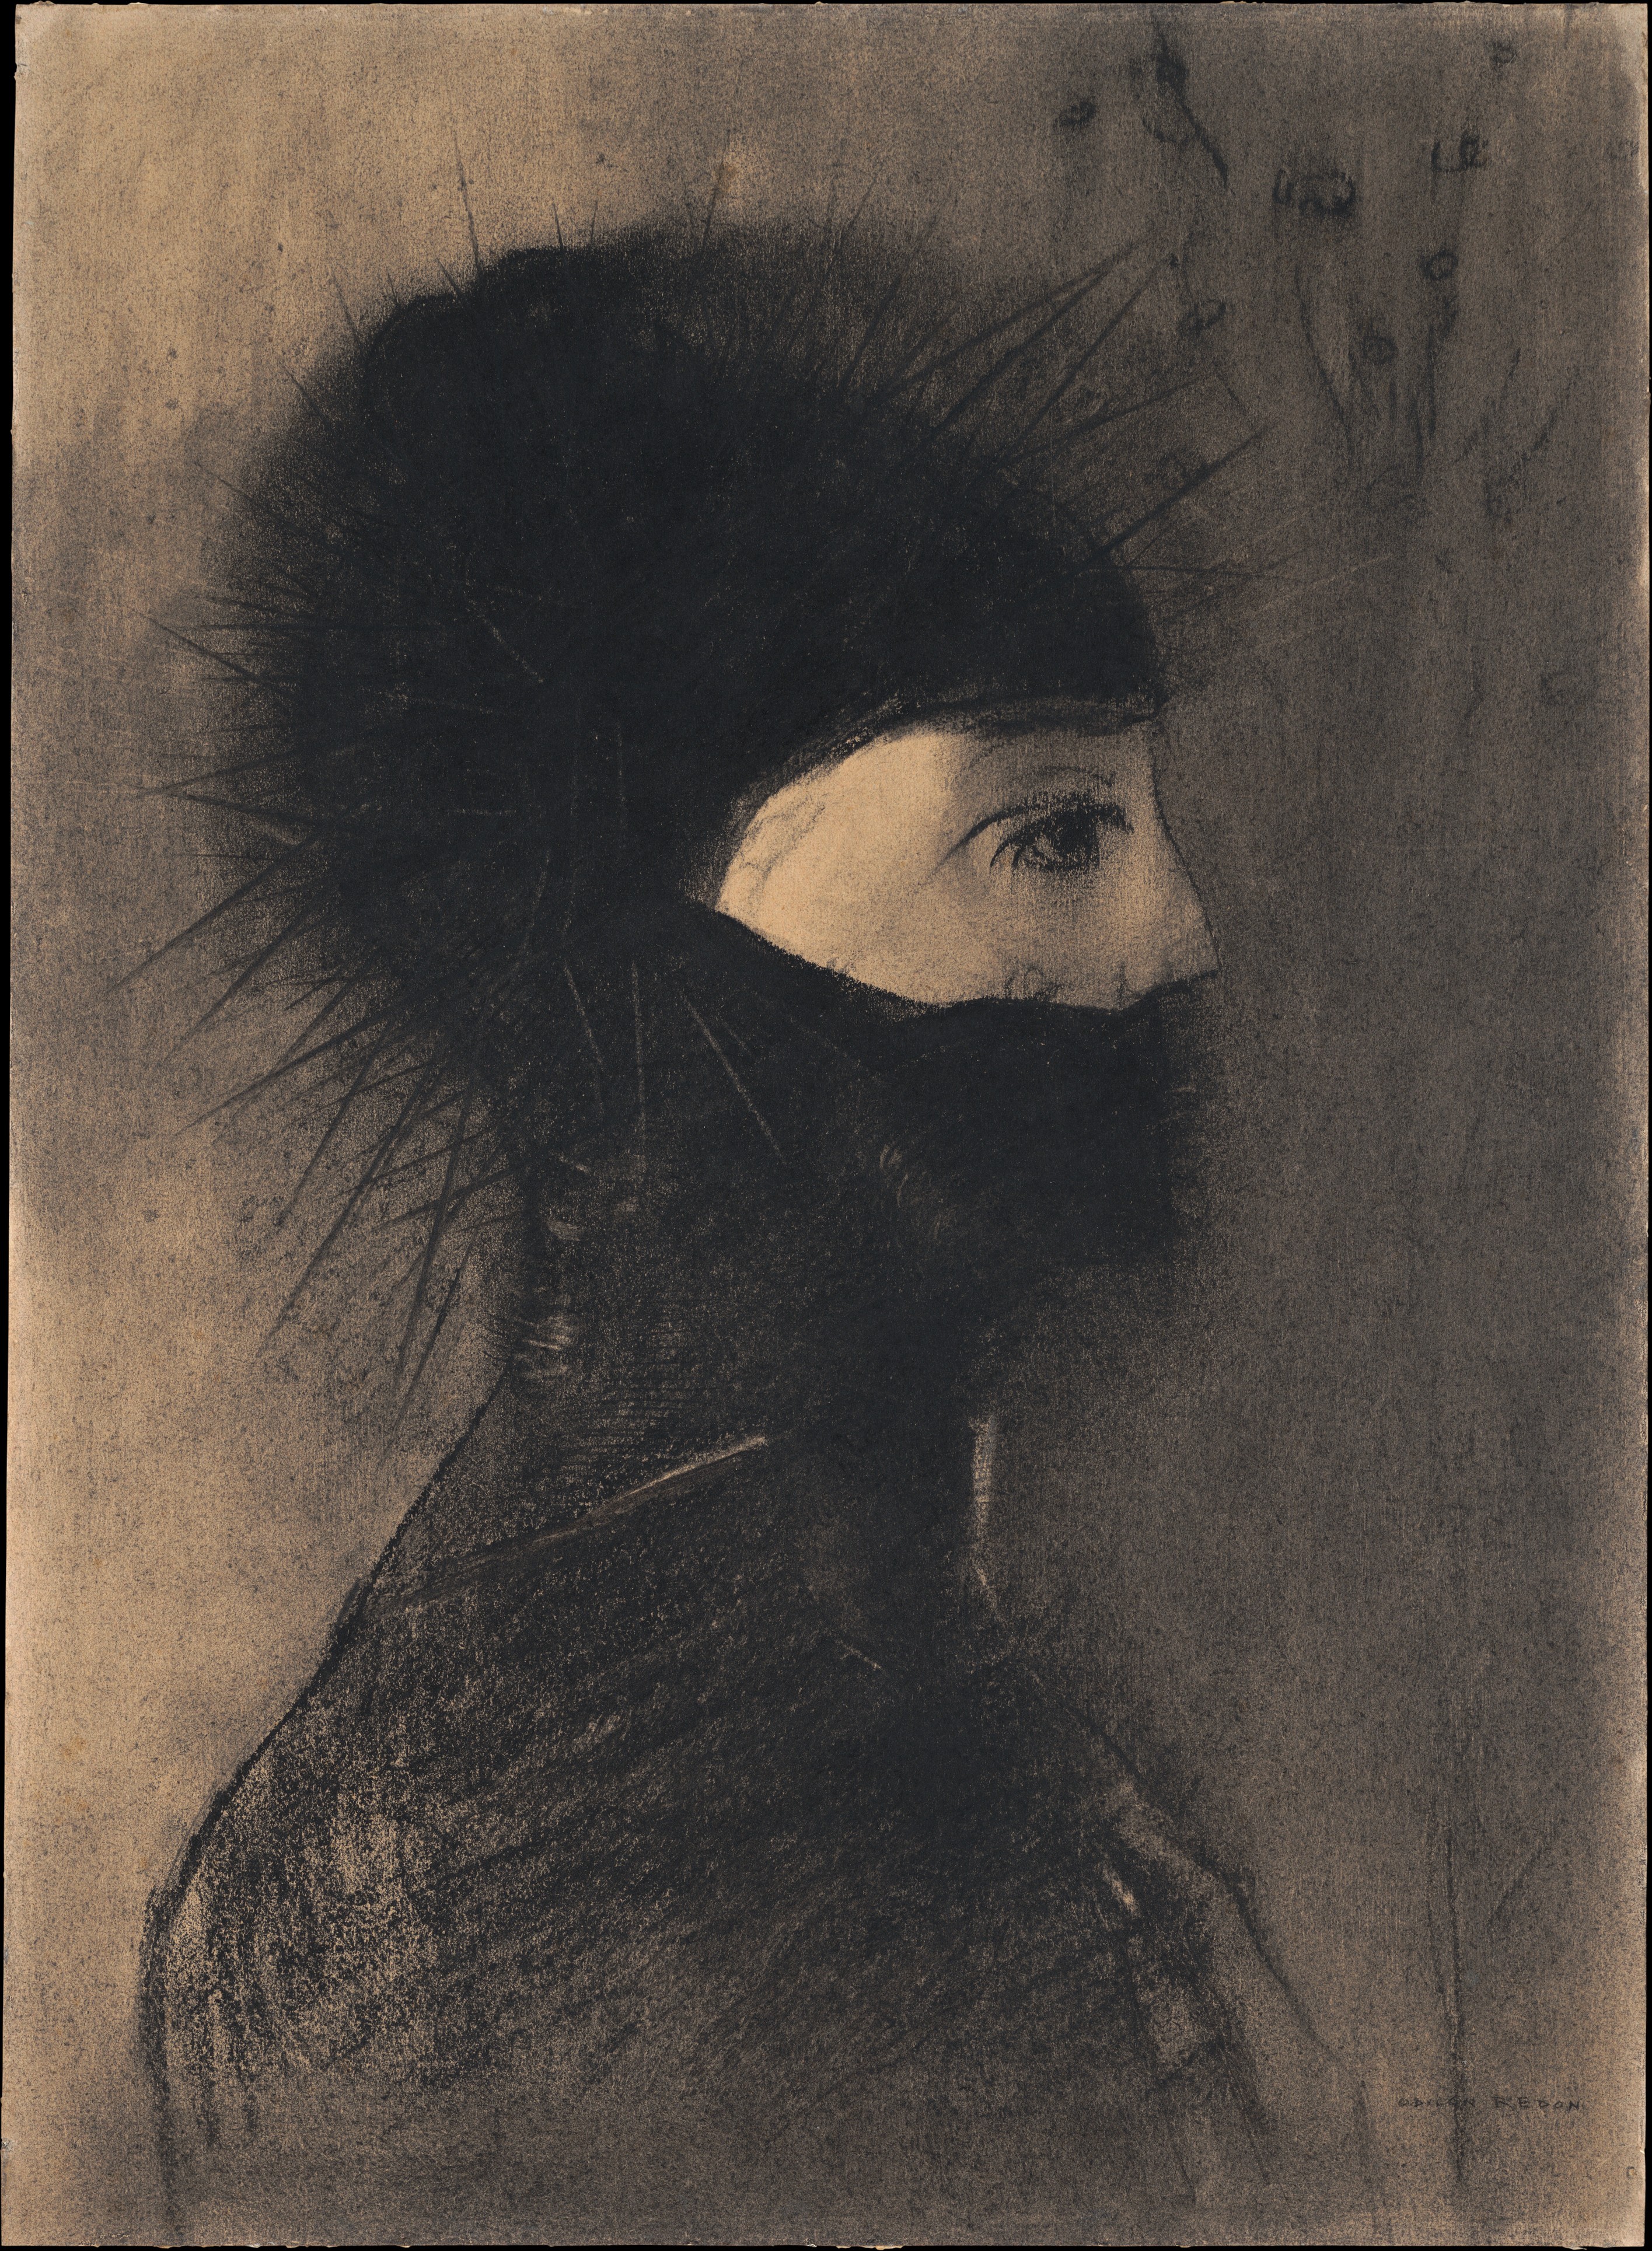 Páncél by Odilon Redon - 1891 - 50.7 x 36.8 cm 